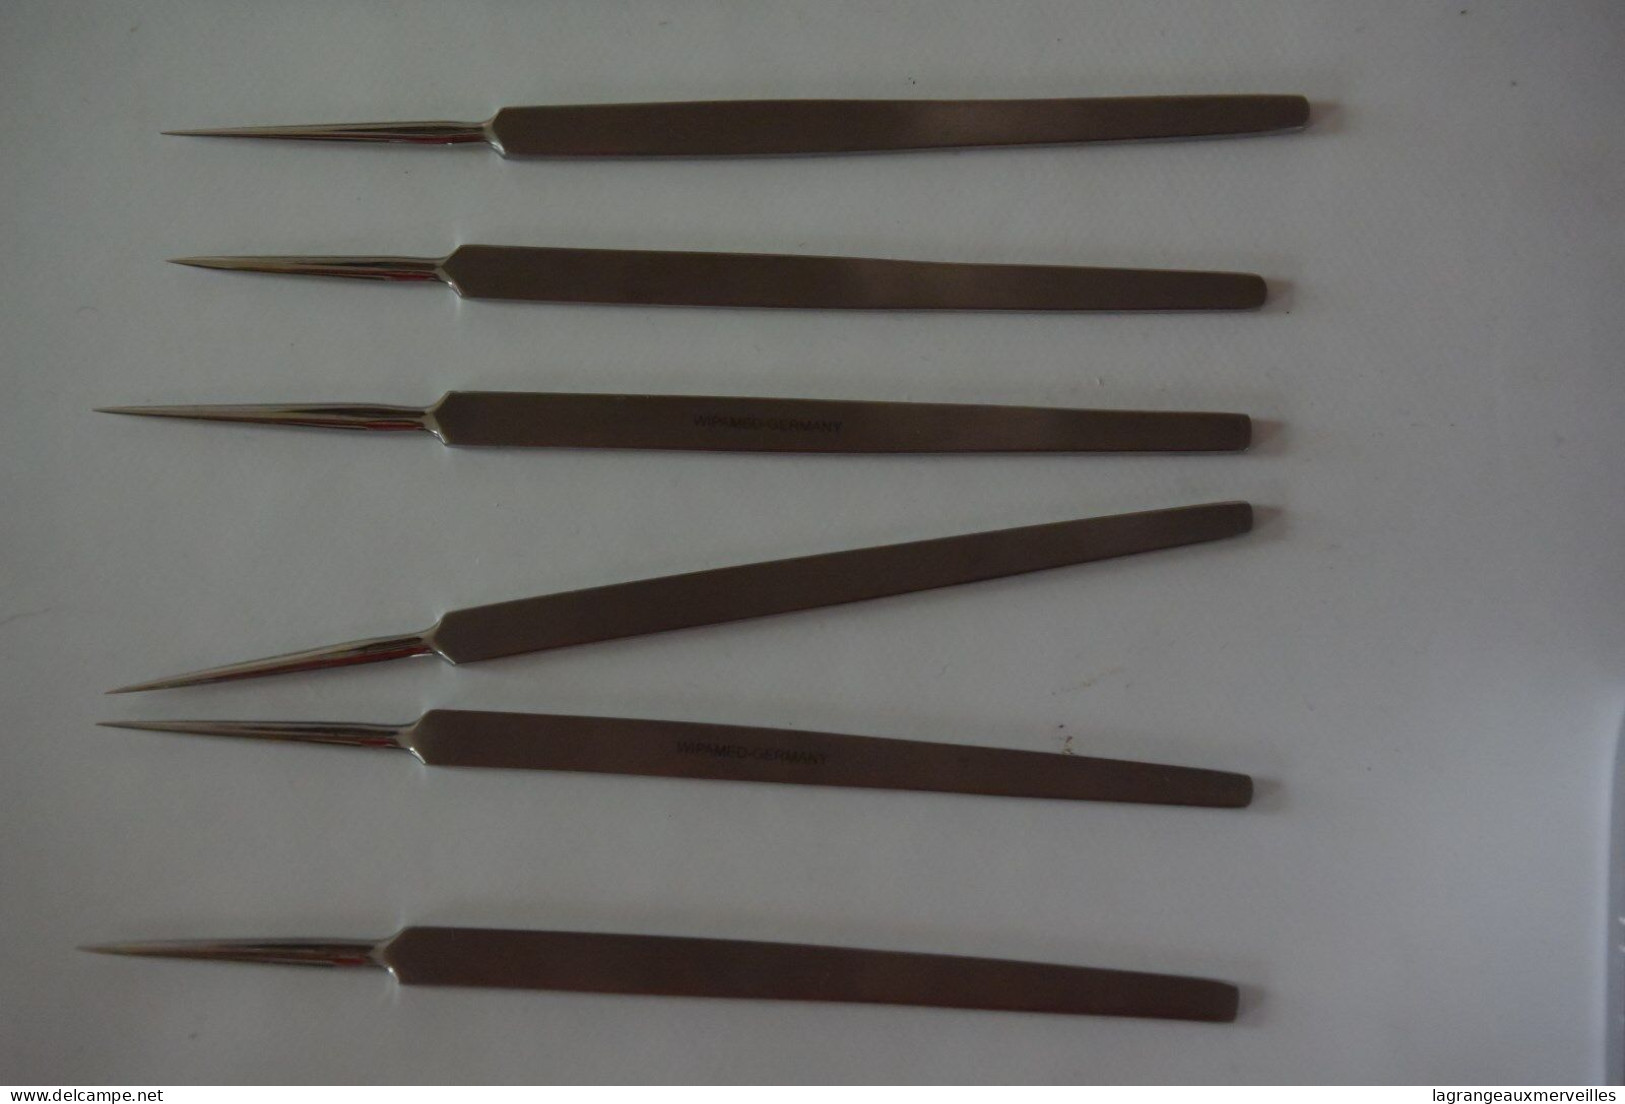 C122 33 anciens outils de médecine WIPAMED GERMANY ciseau coupe ongle scalpel - outil de métier